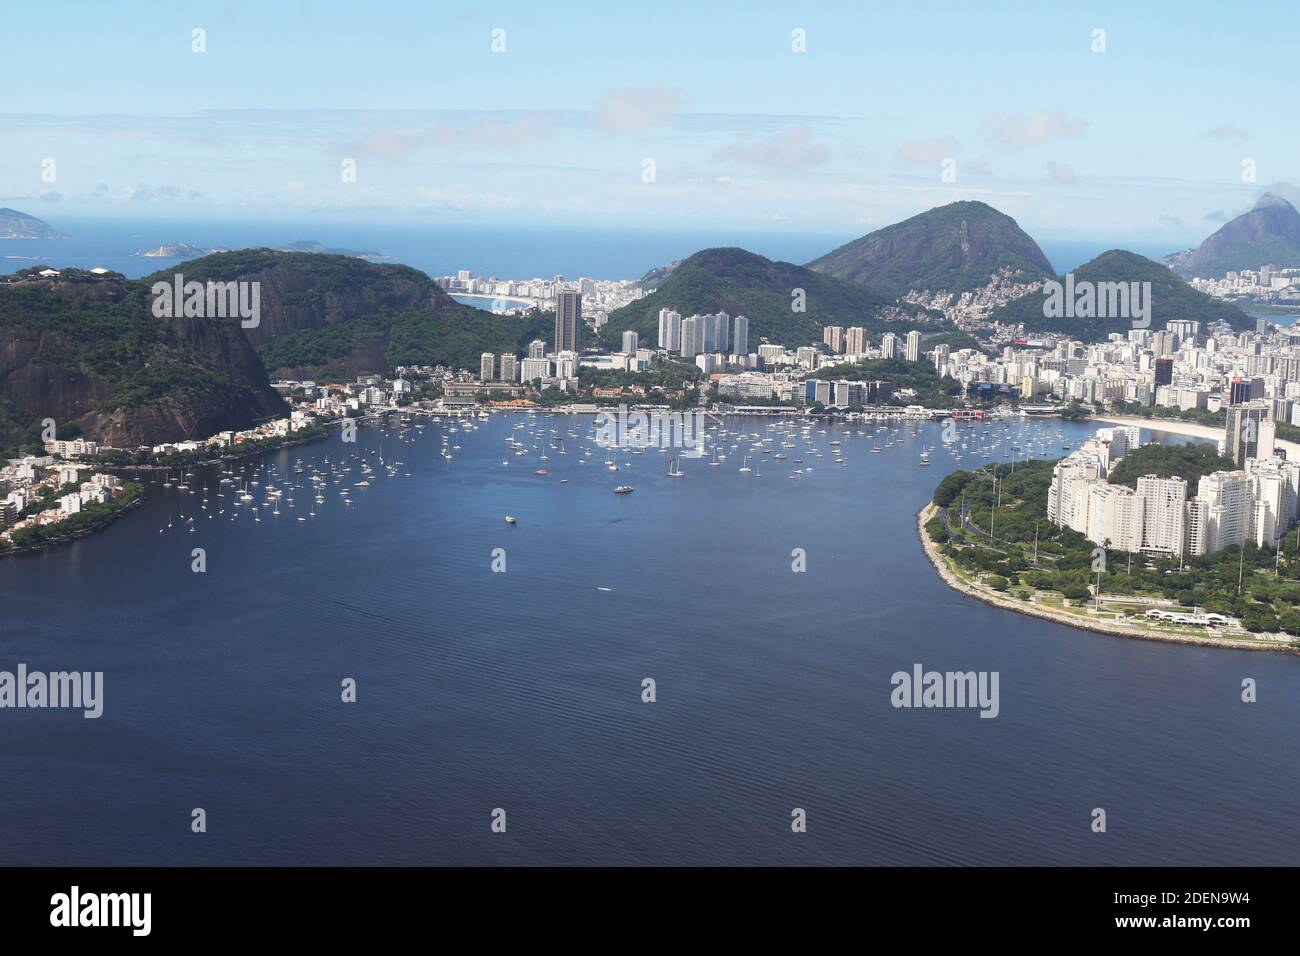 Rio de Janeiro - größtes internationales Reiseziel in Brasilien, Lateinamerika und der gesamten südlichen Hemisphäre. Stockfoto